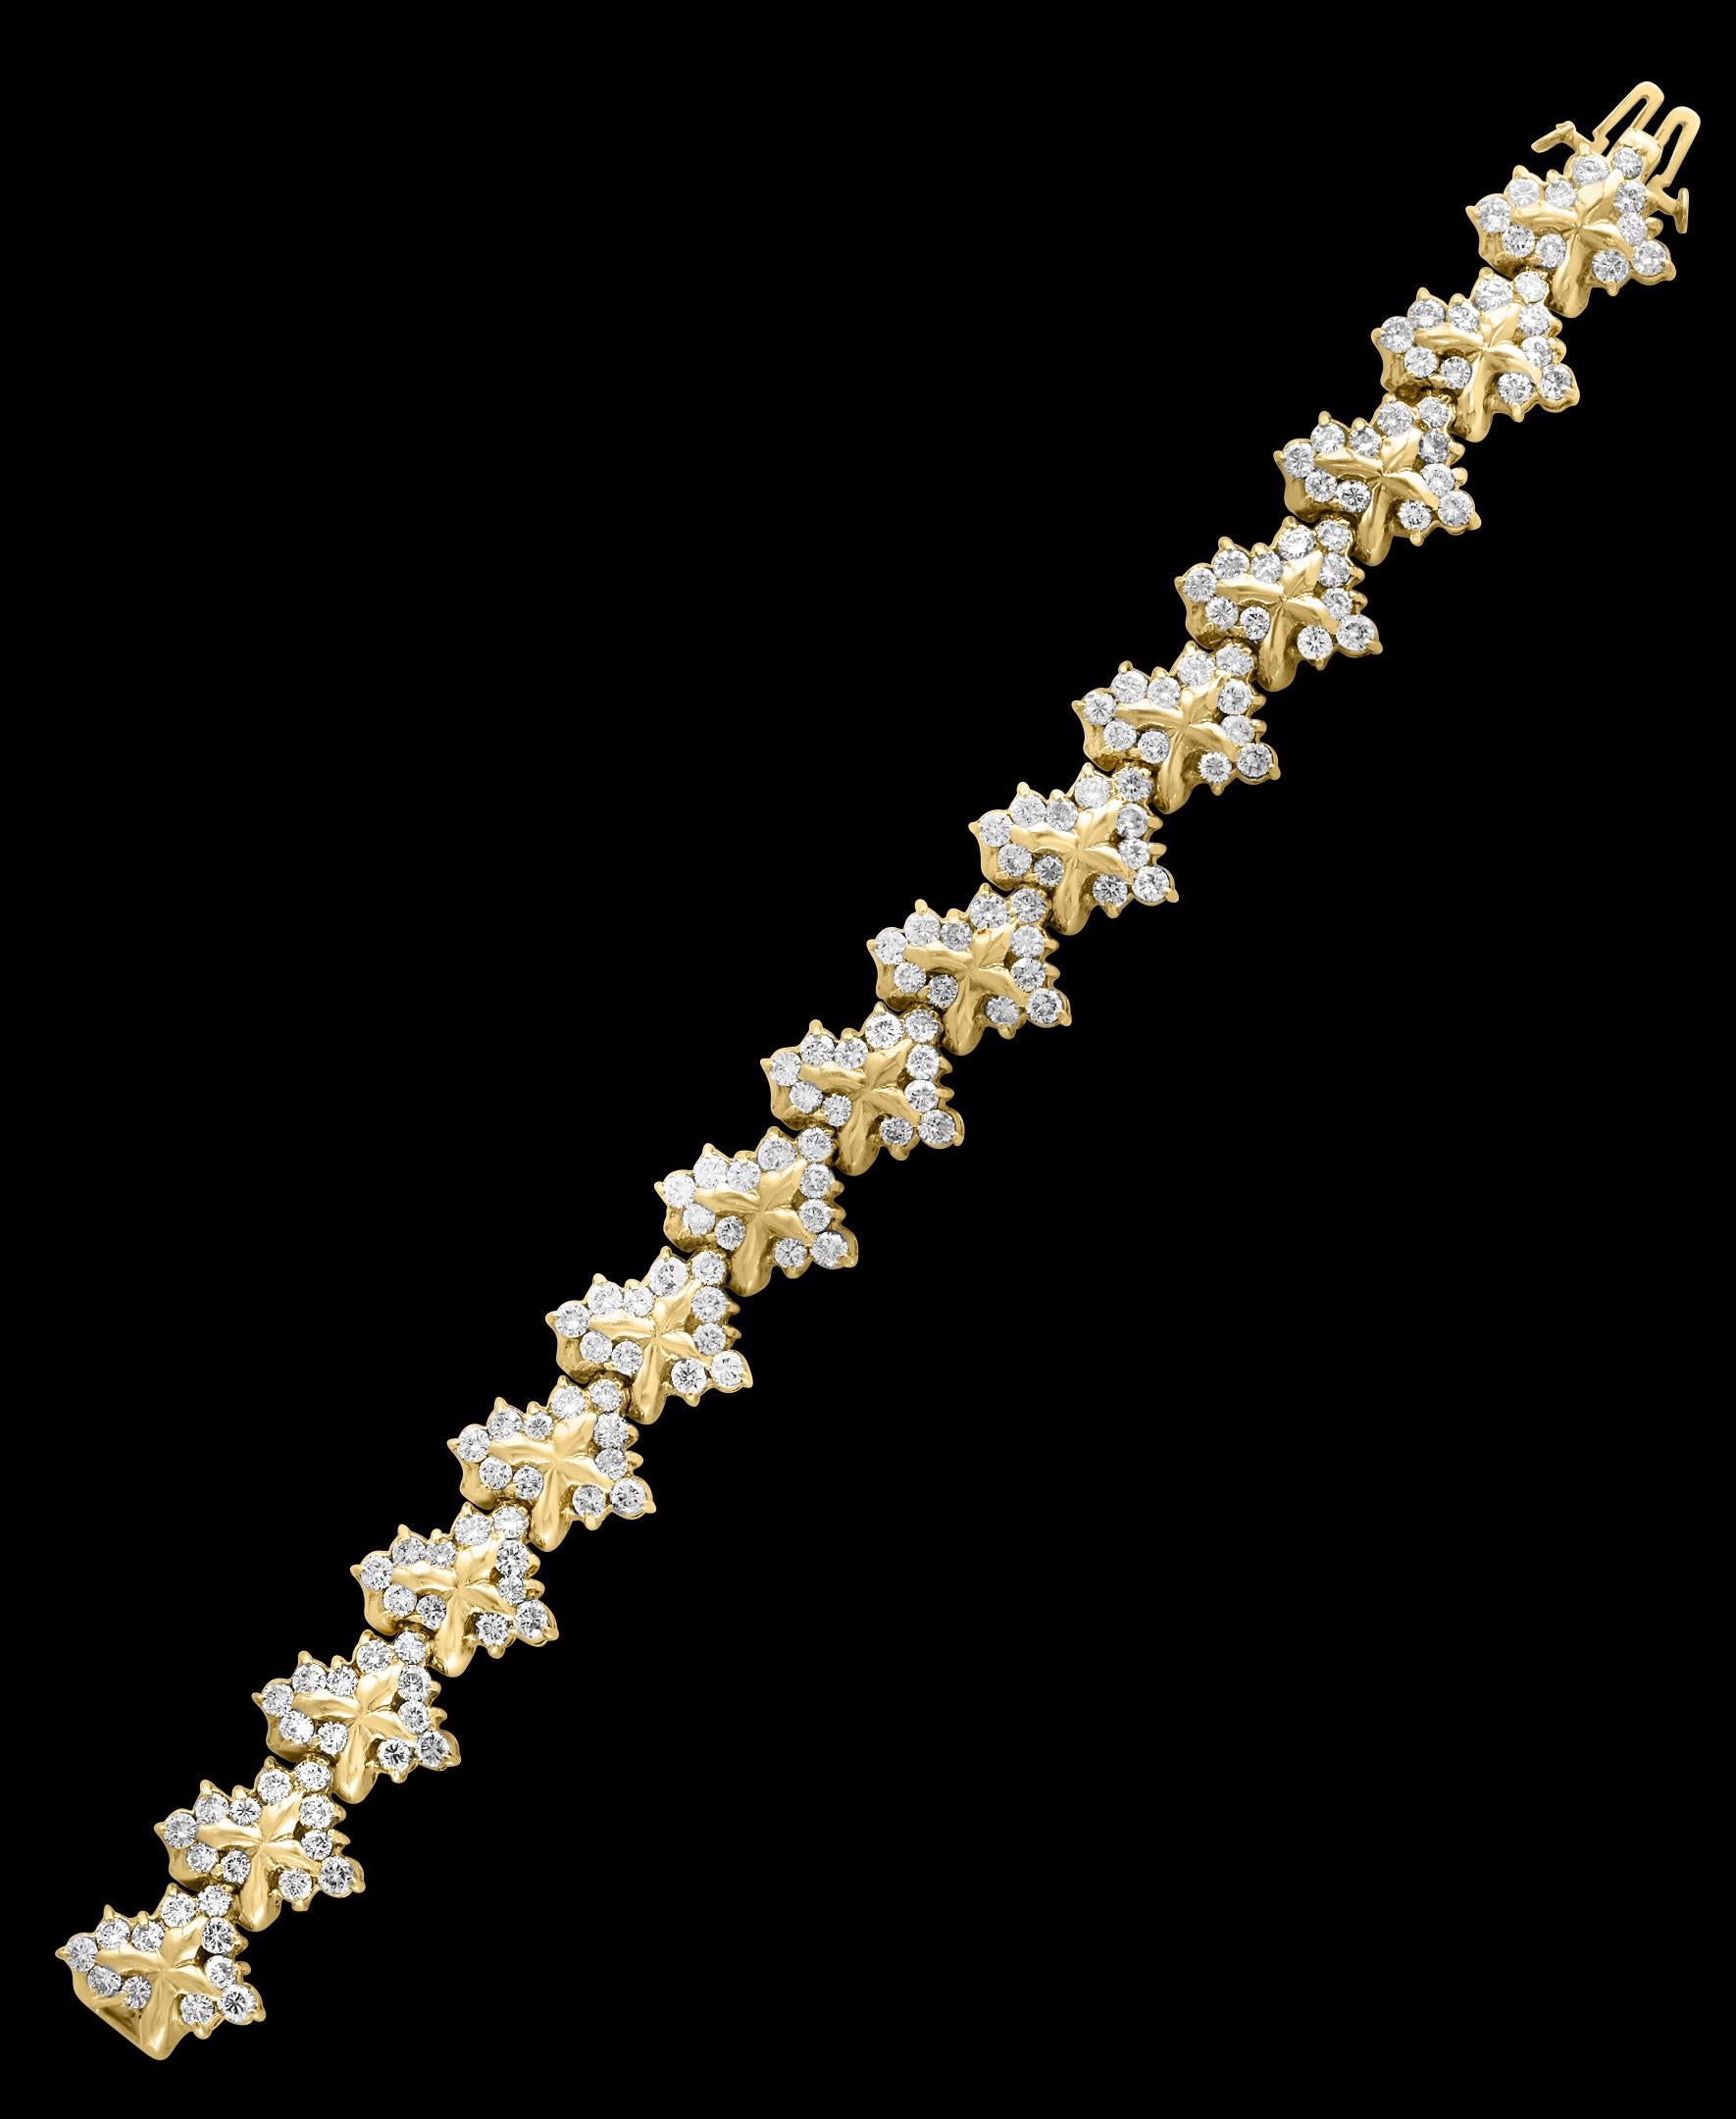 Round Cut 38 Carat Diamond Necklace and Bracelet 180 Grams 14 Karat Gold Bridal Suite For Sale